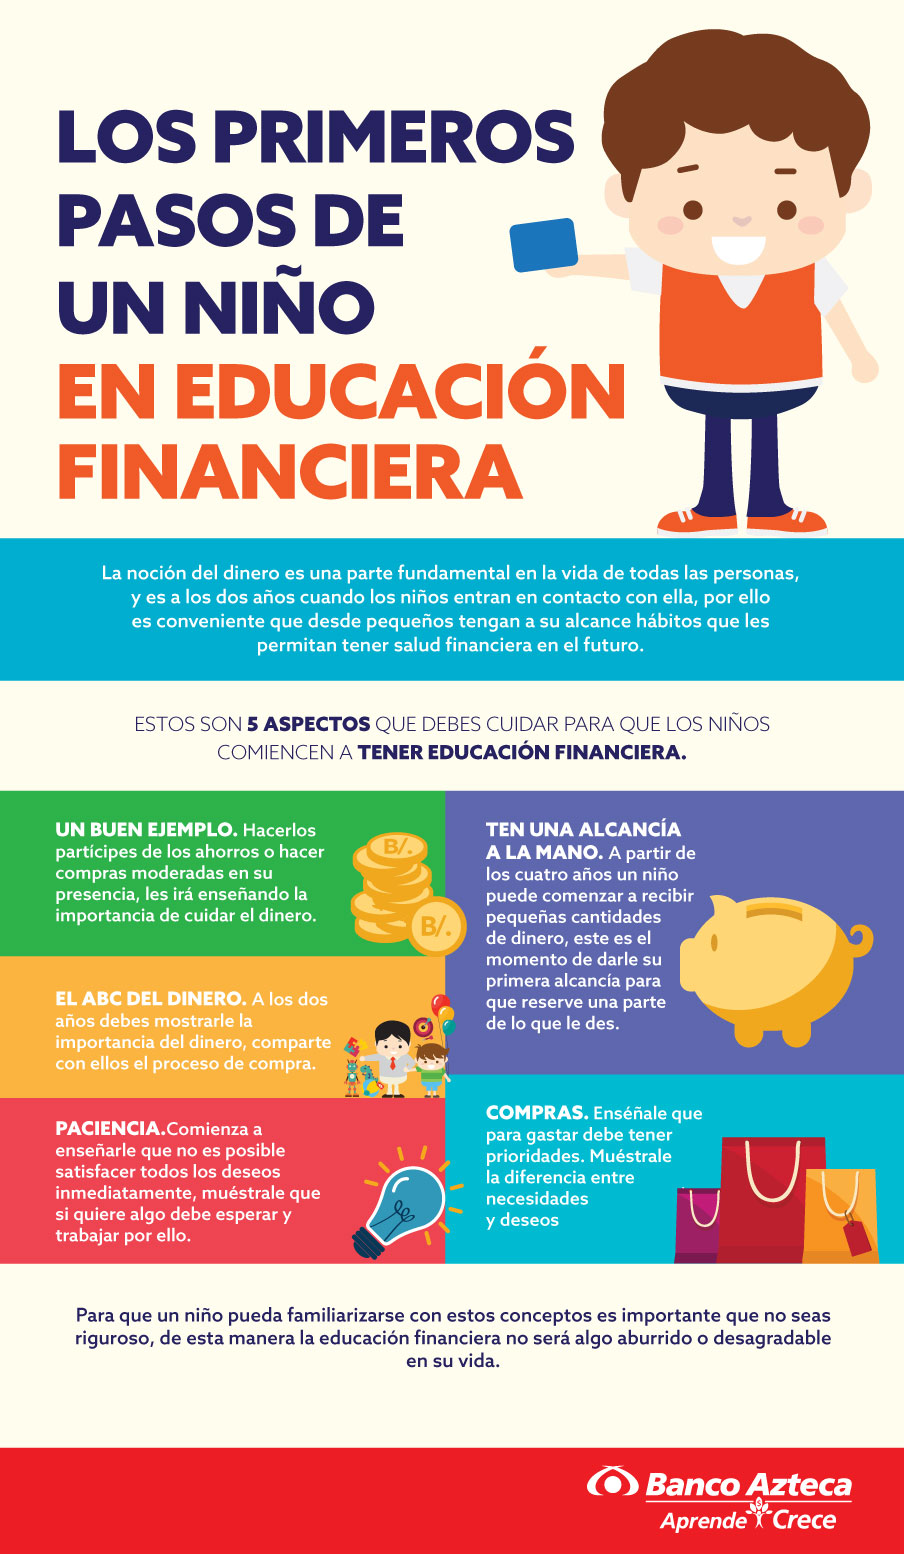 Los primeros pasos de un niño en Educación Financiera